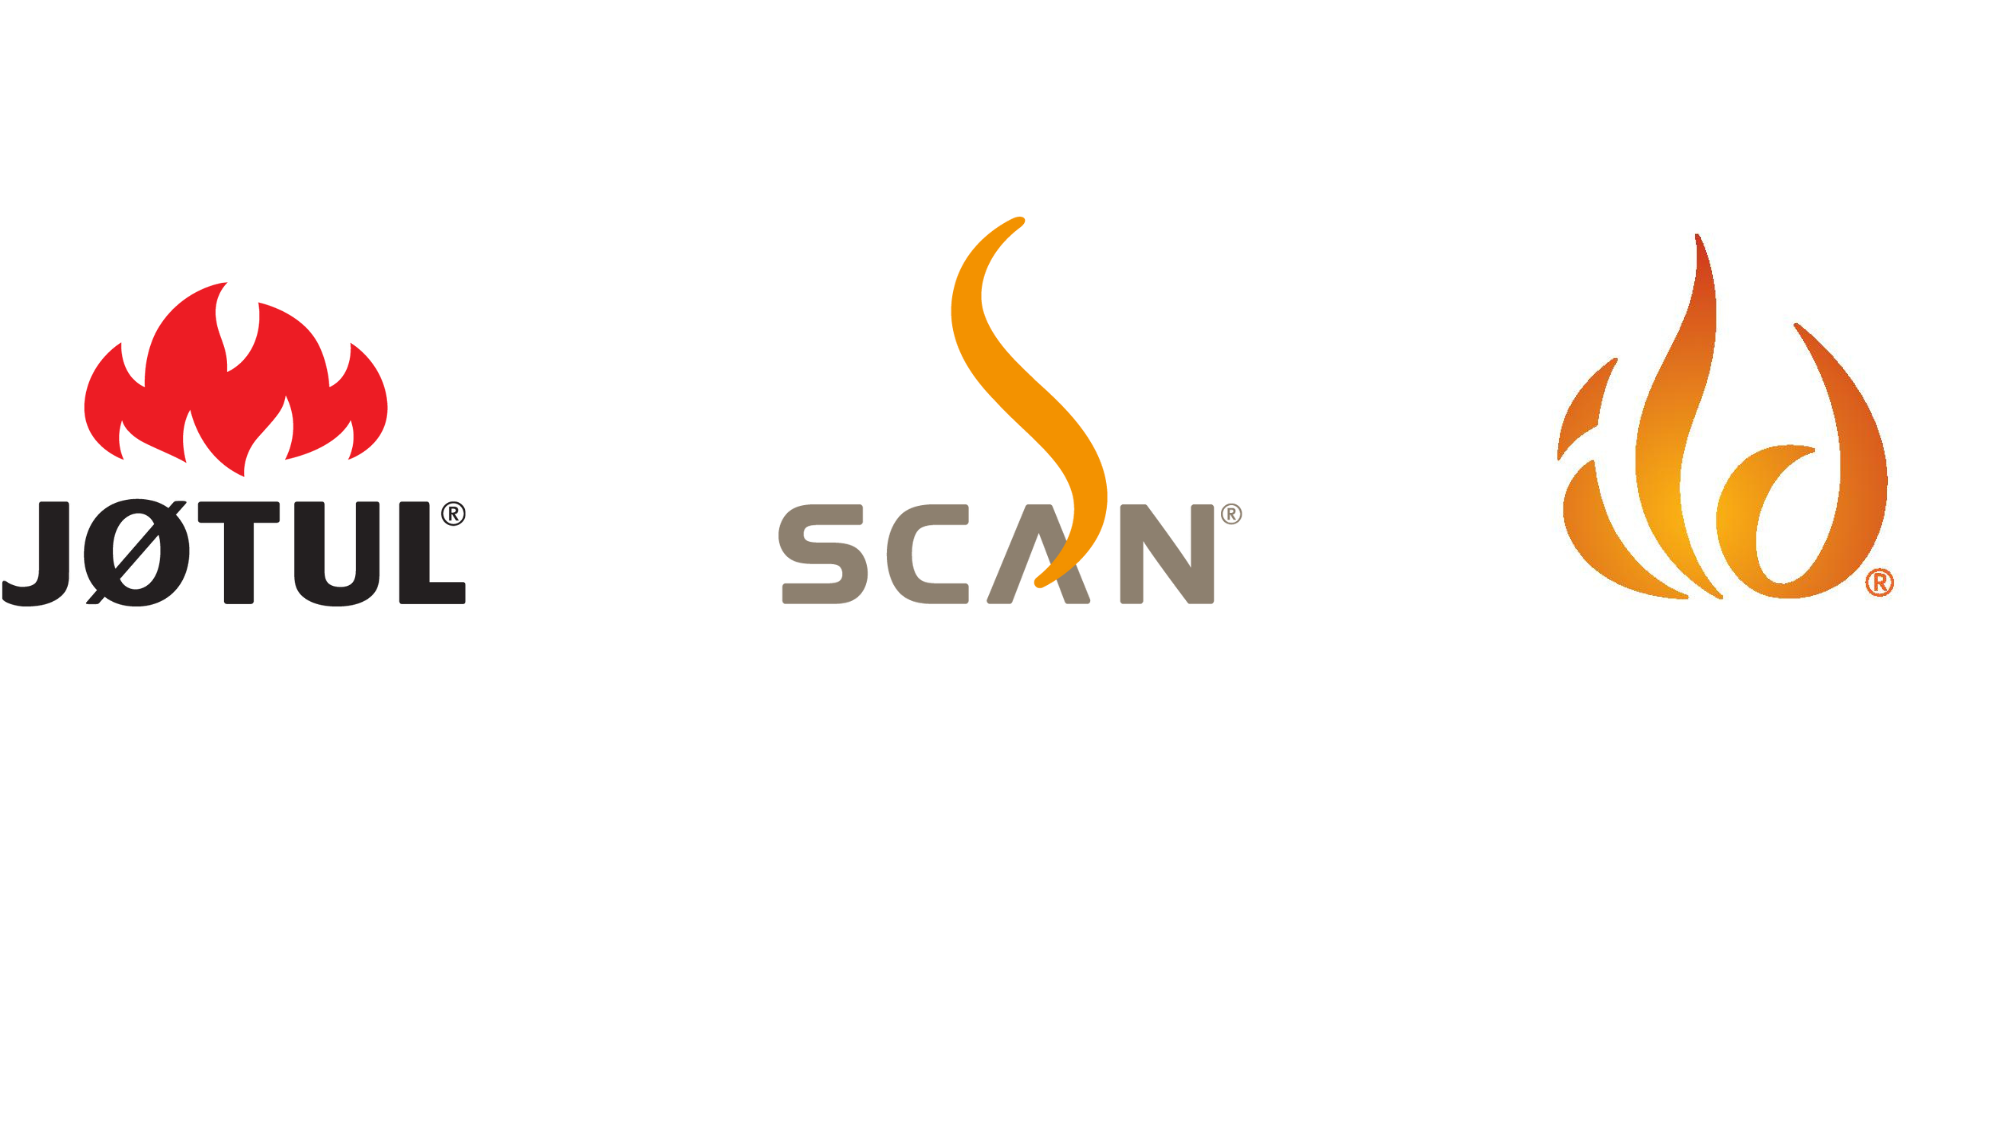 Marken-Logos von den Marken Jotul, Scan und Ild